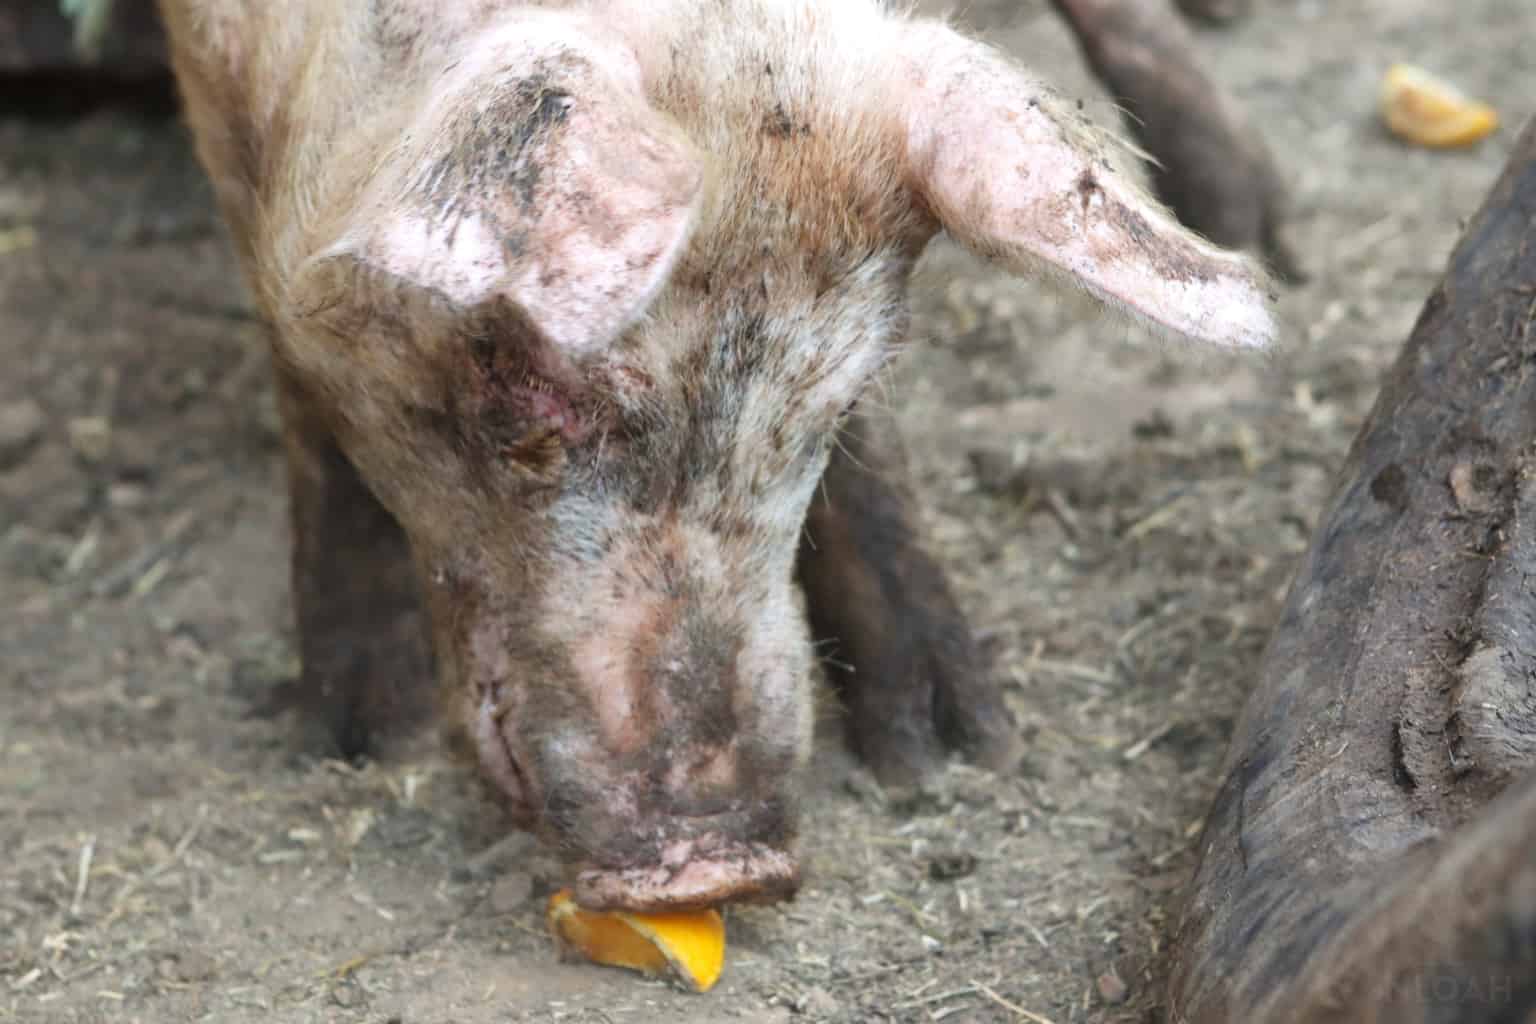 a pig eating an orange slice